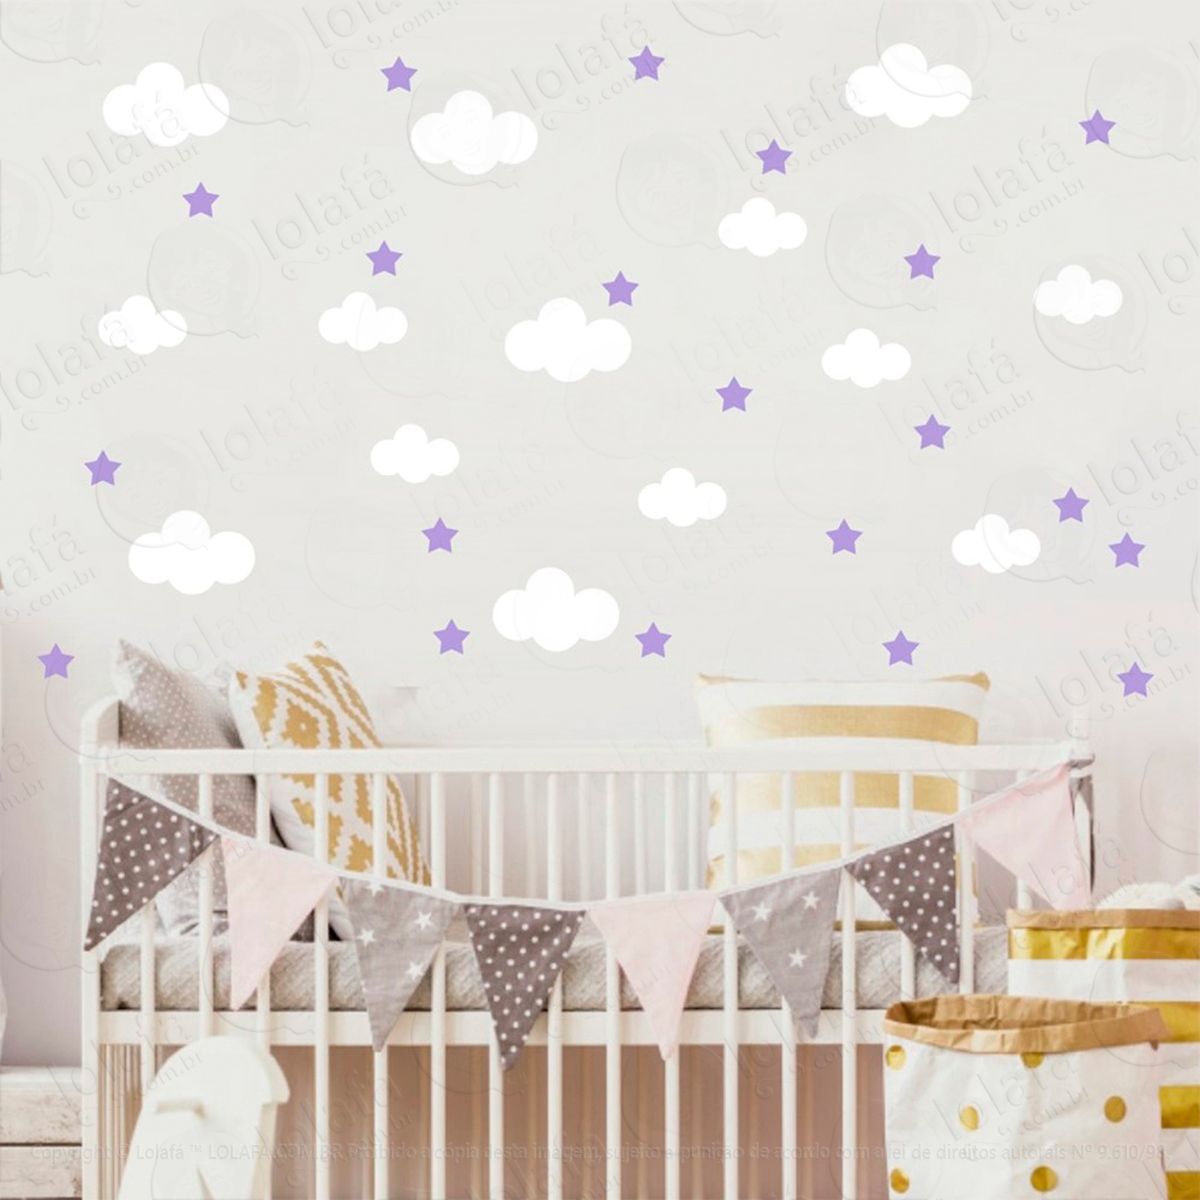 adesivos nuvens e estrelas 104 peças adesivos para quarto de bebê infantil - mod:829